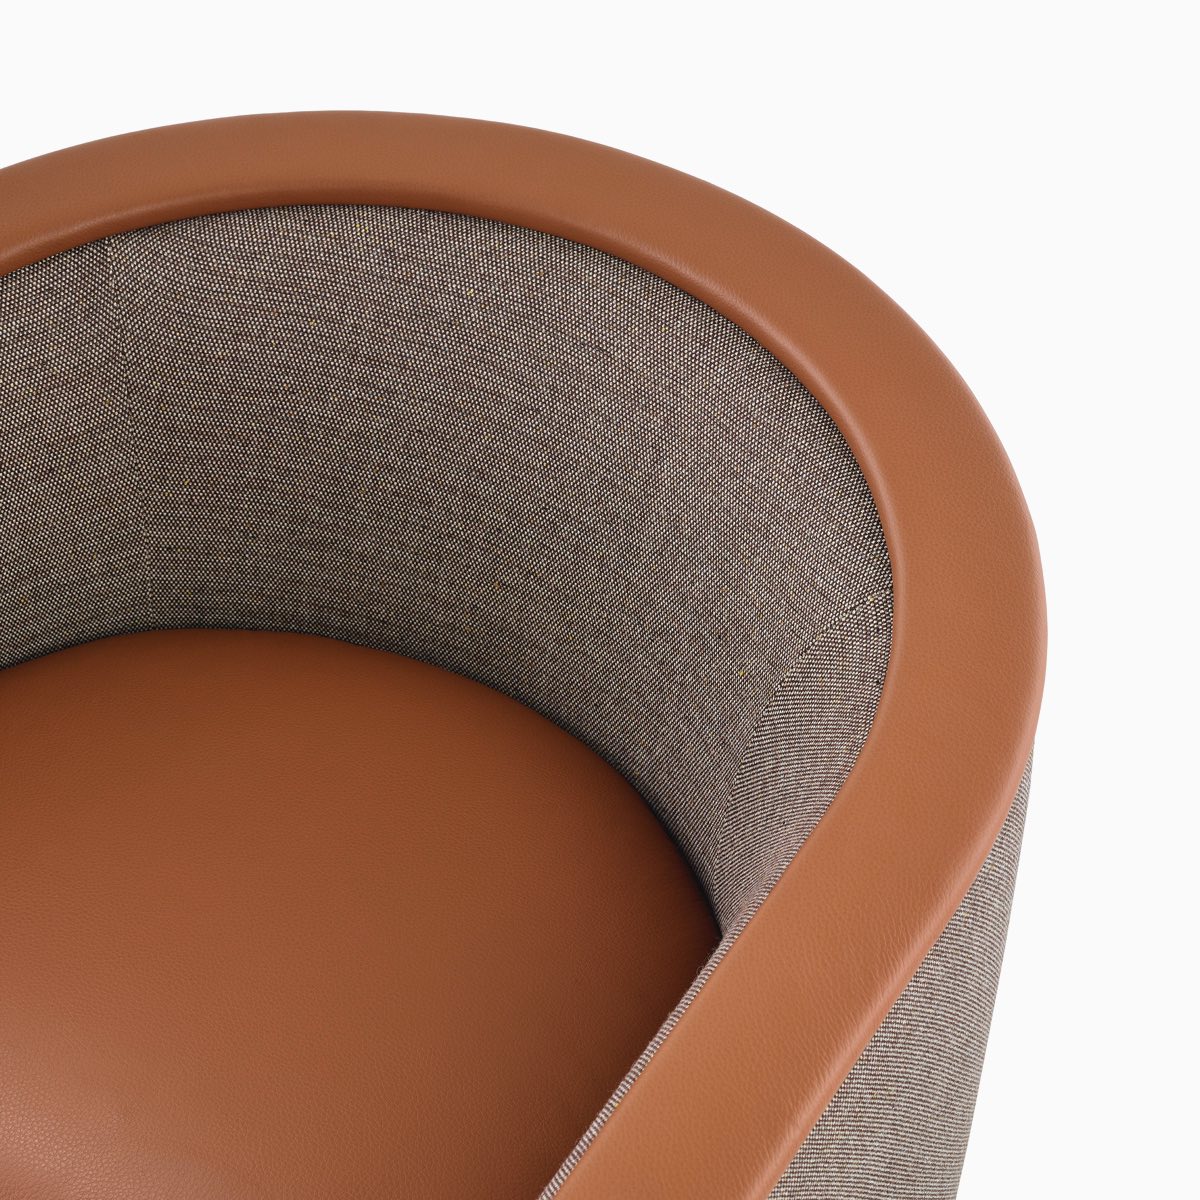 俯视图：搭配Tenera枫木色椅座和扶手以及褐色羊毛粗花呢靠背的U-系列休闲椅。